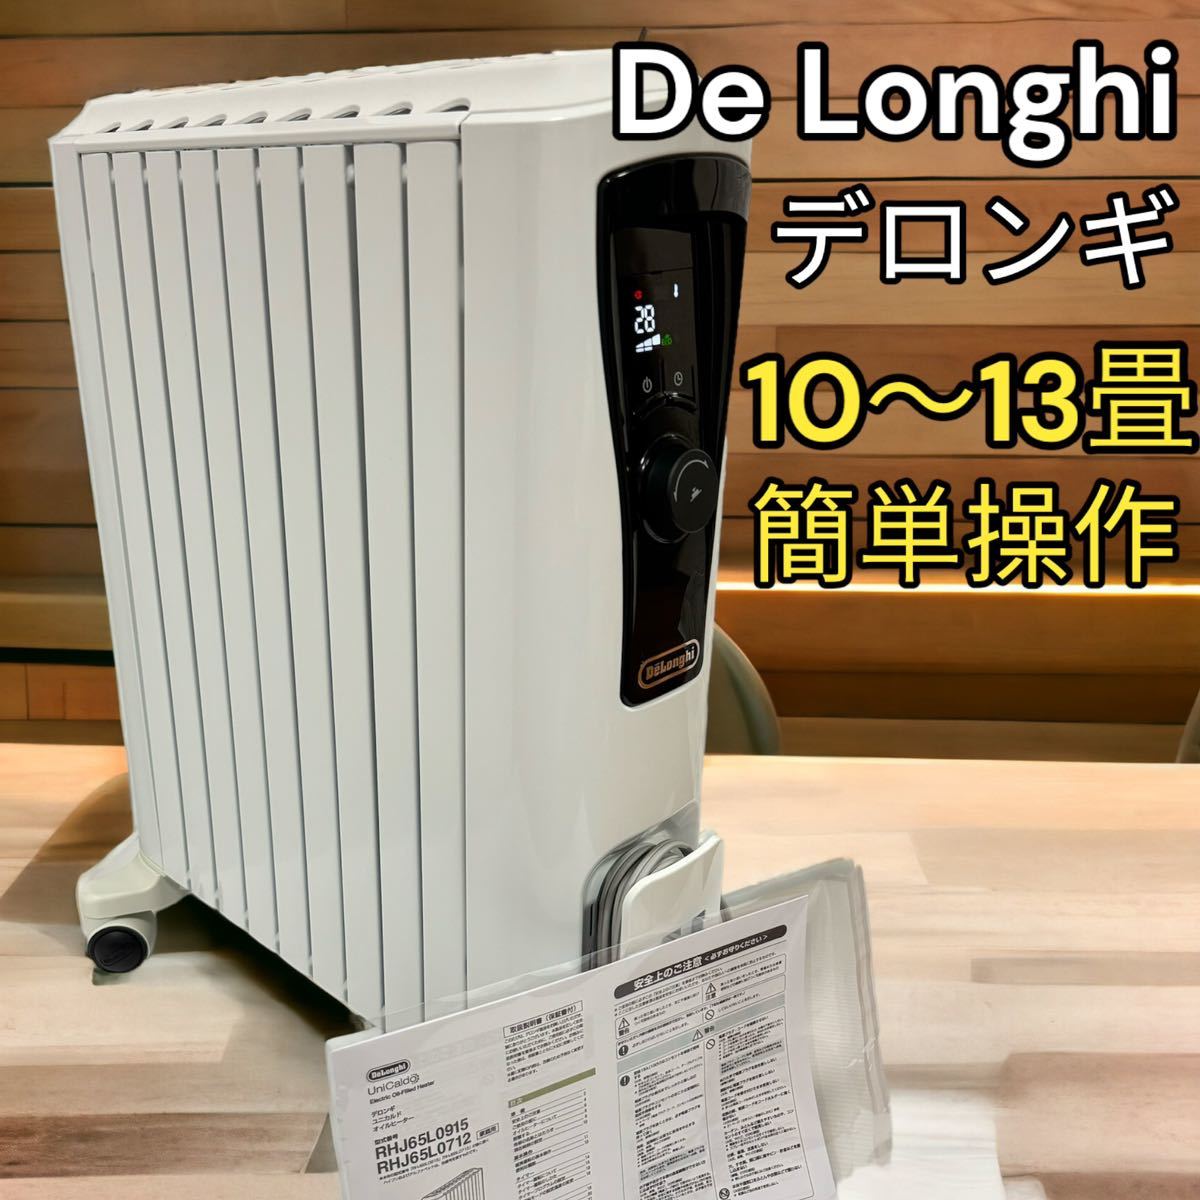 美品 DeLonghi デロンギ オイルヒーター RHJ65L0915 簡単操作｜PayPay